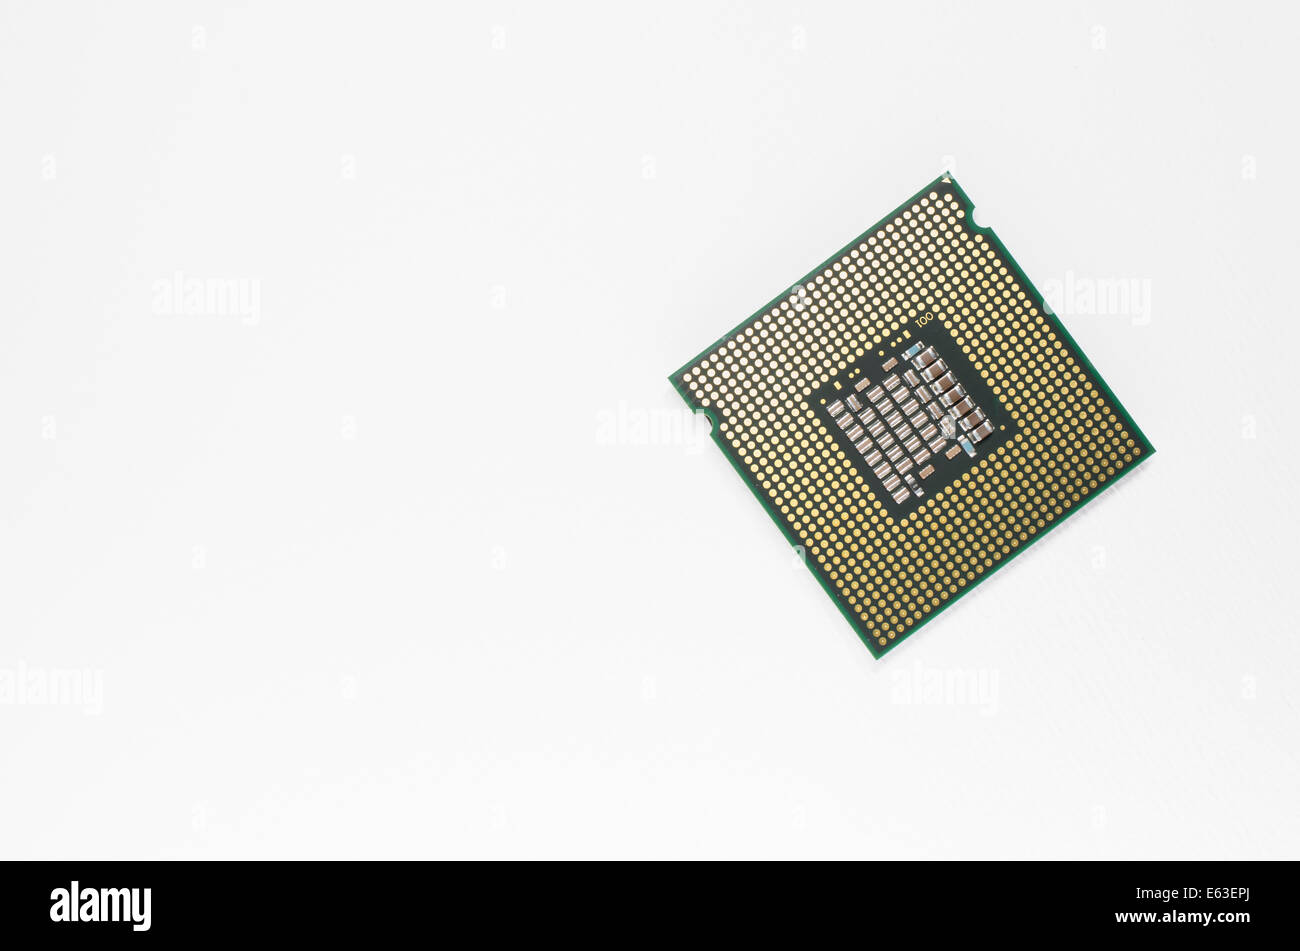 Processore Intel Core 2 Quad cpu indietro, close up su sfondo bianco Foto Stock